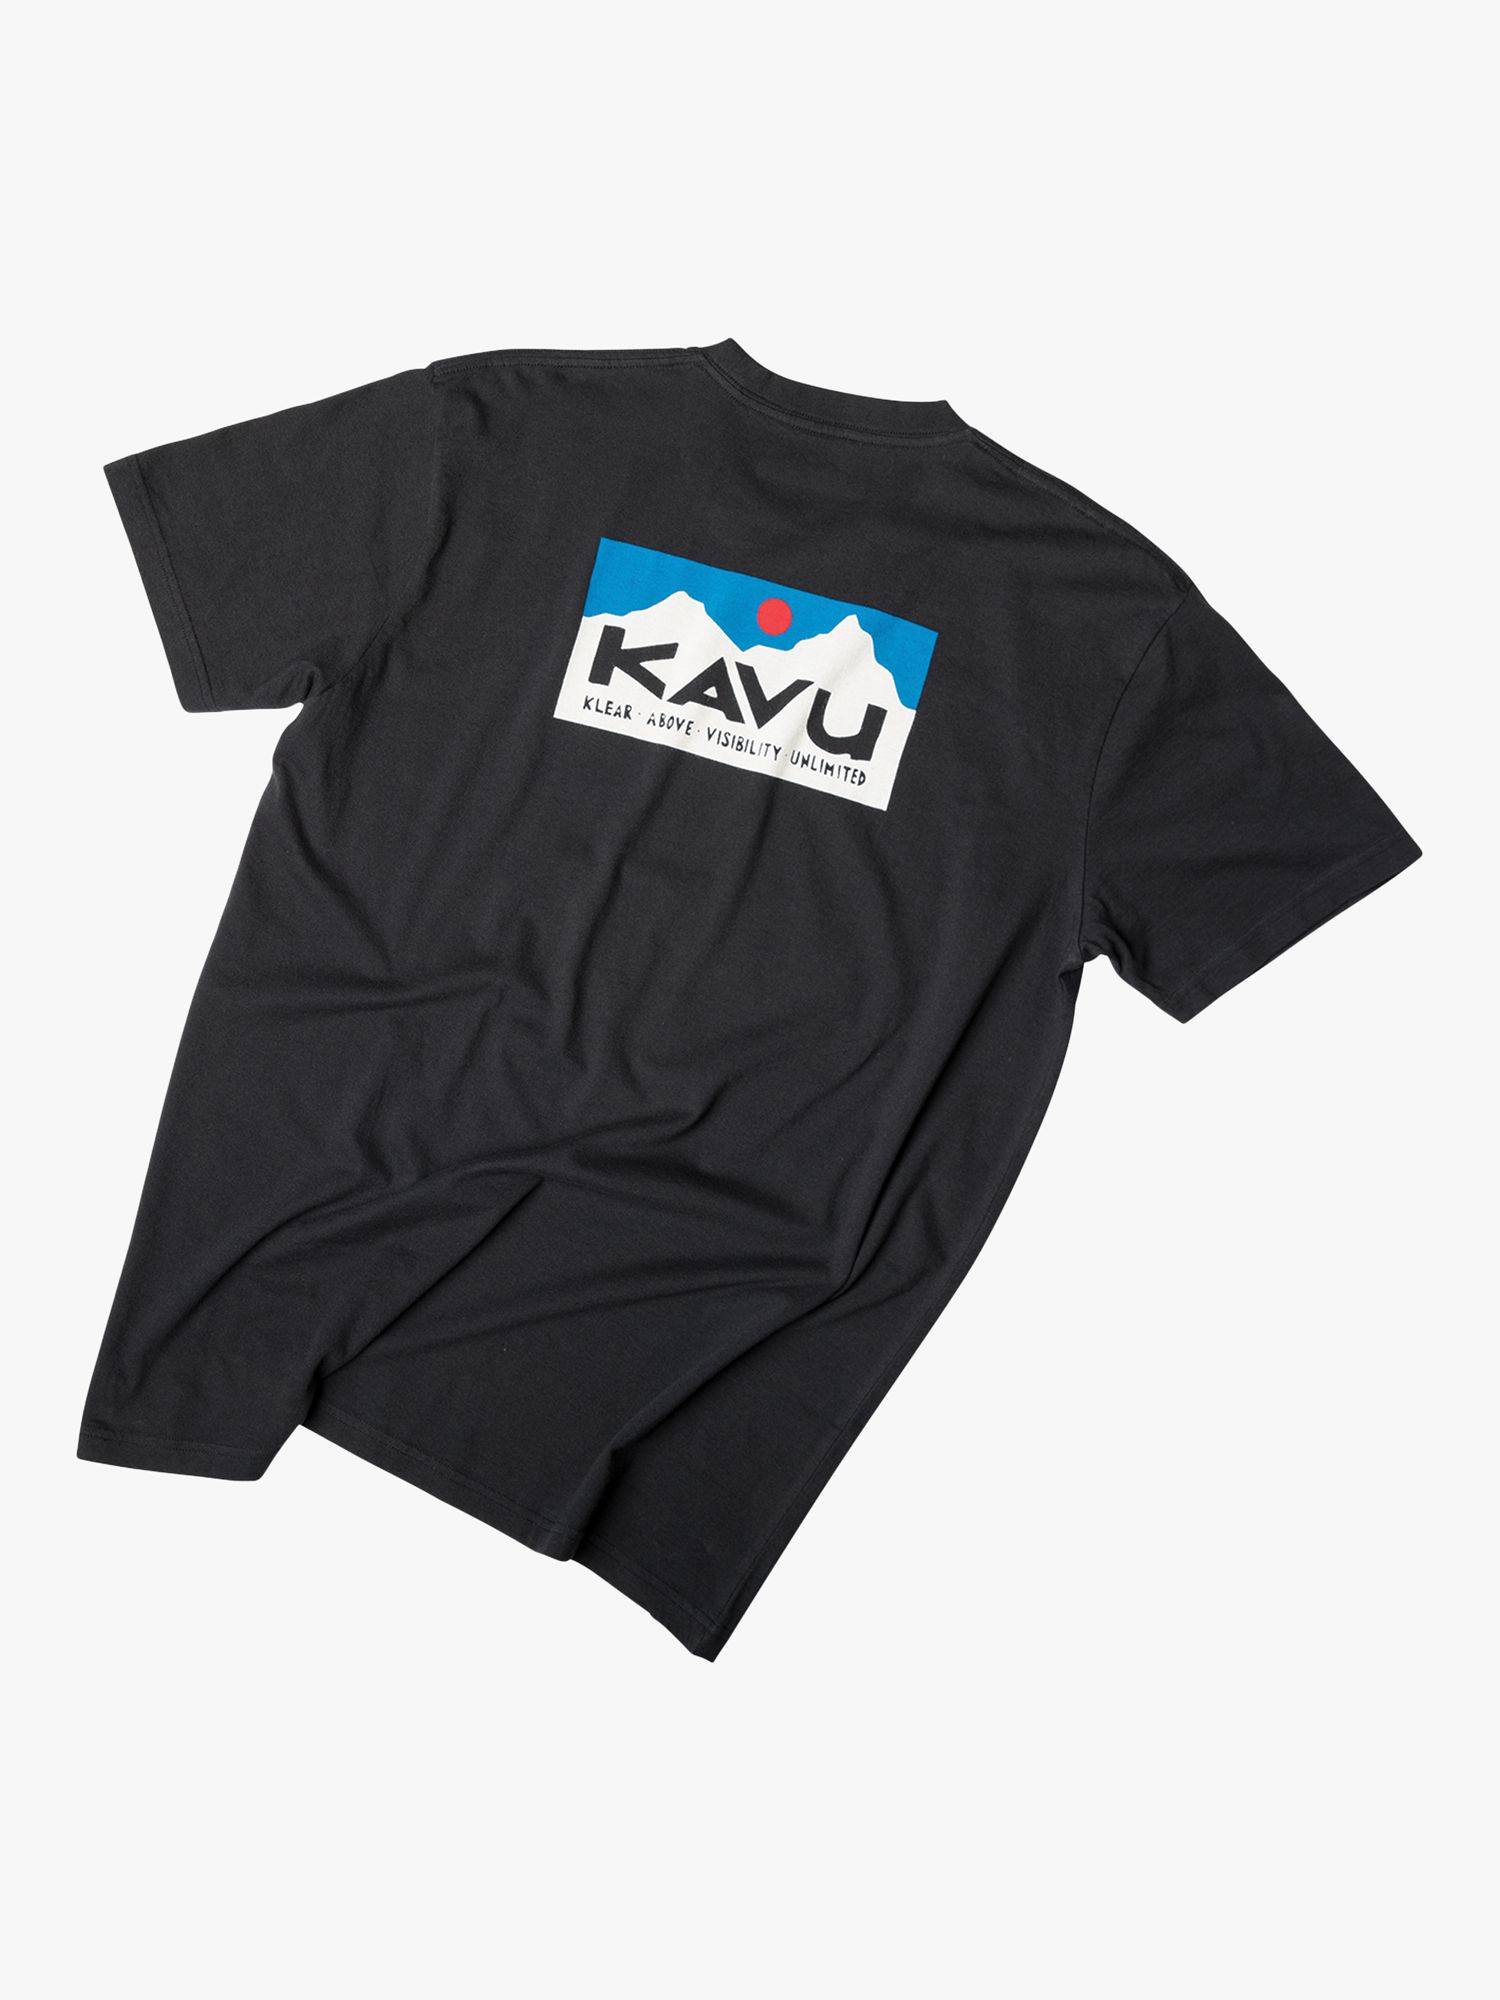 KAVU Klear Above Etch Art Organic Cotton T-Shirt, Black, XL